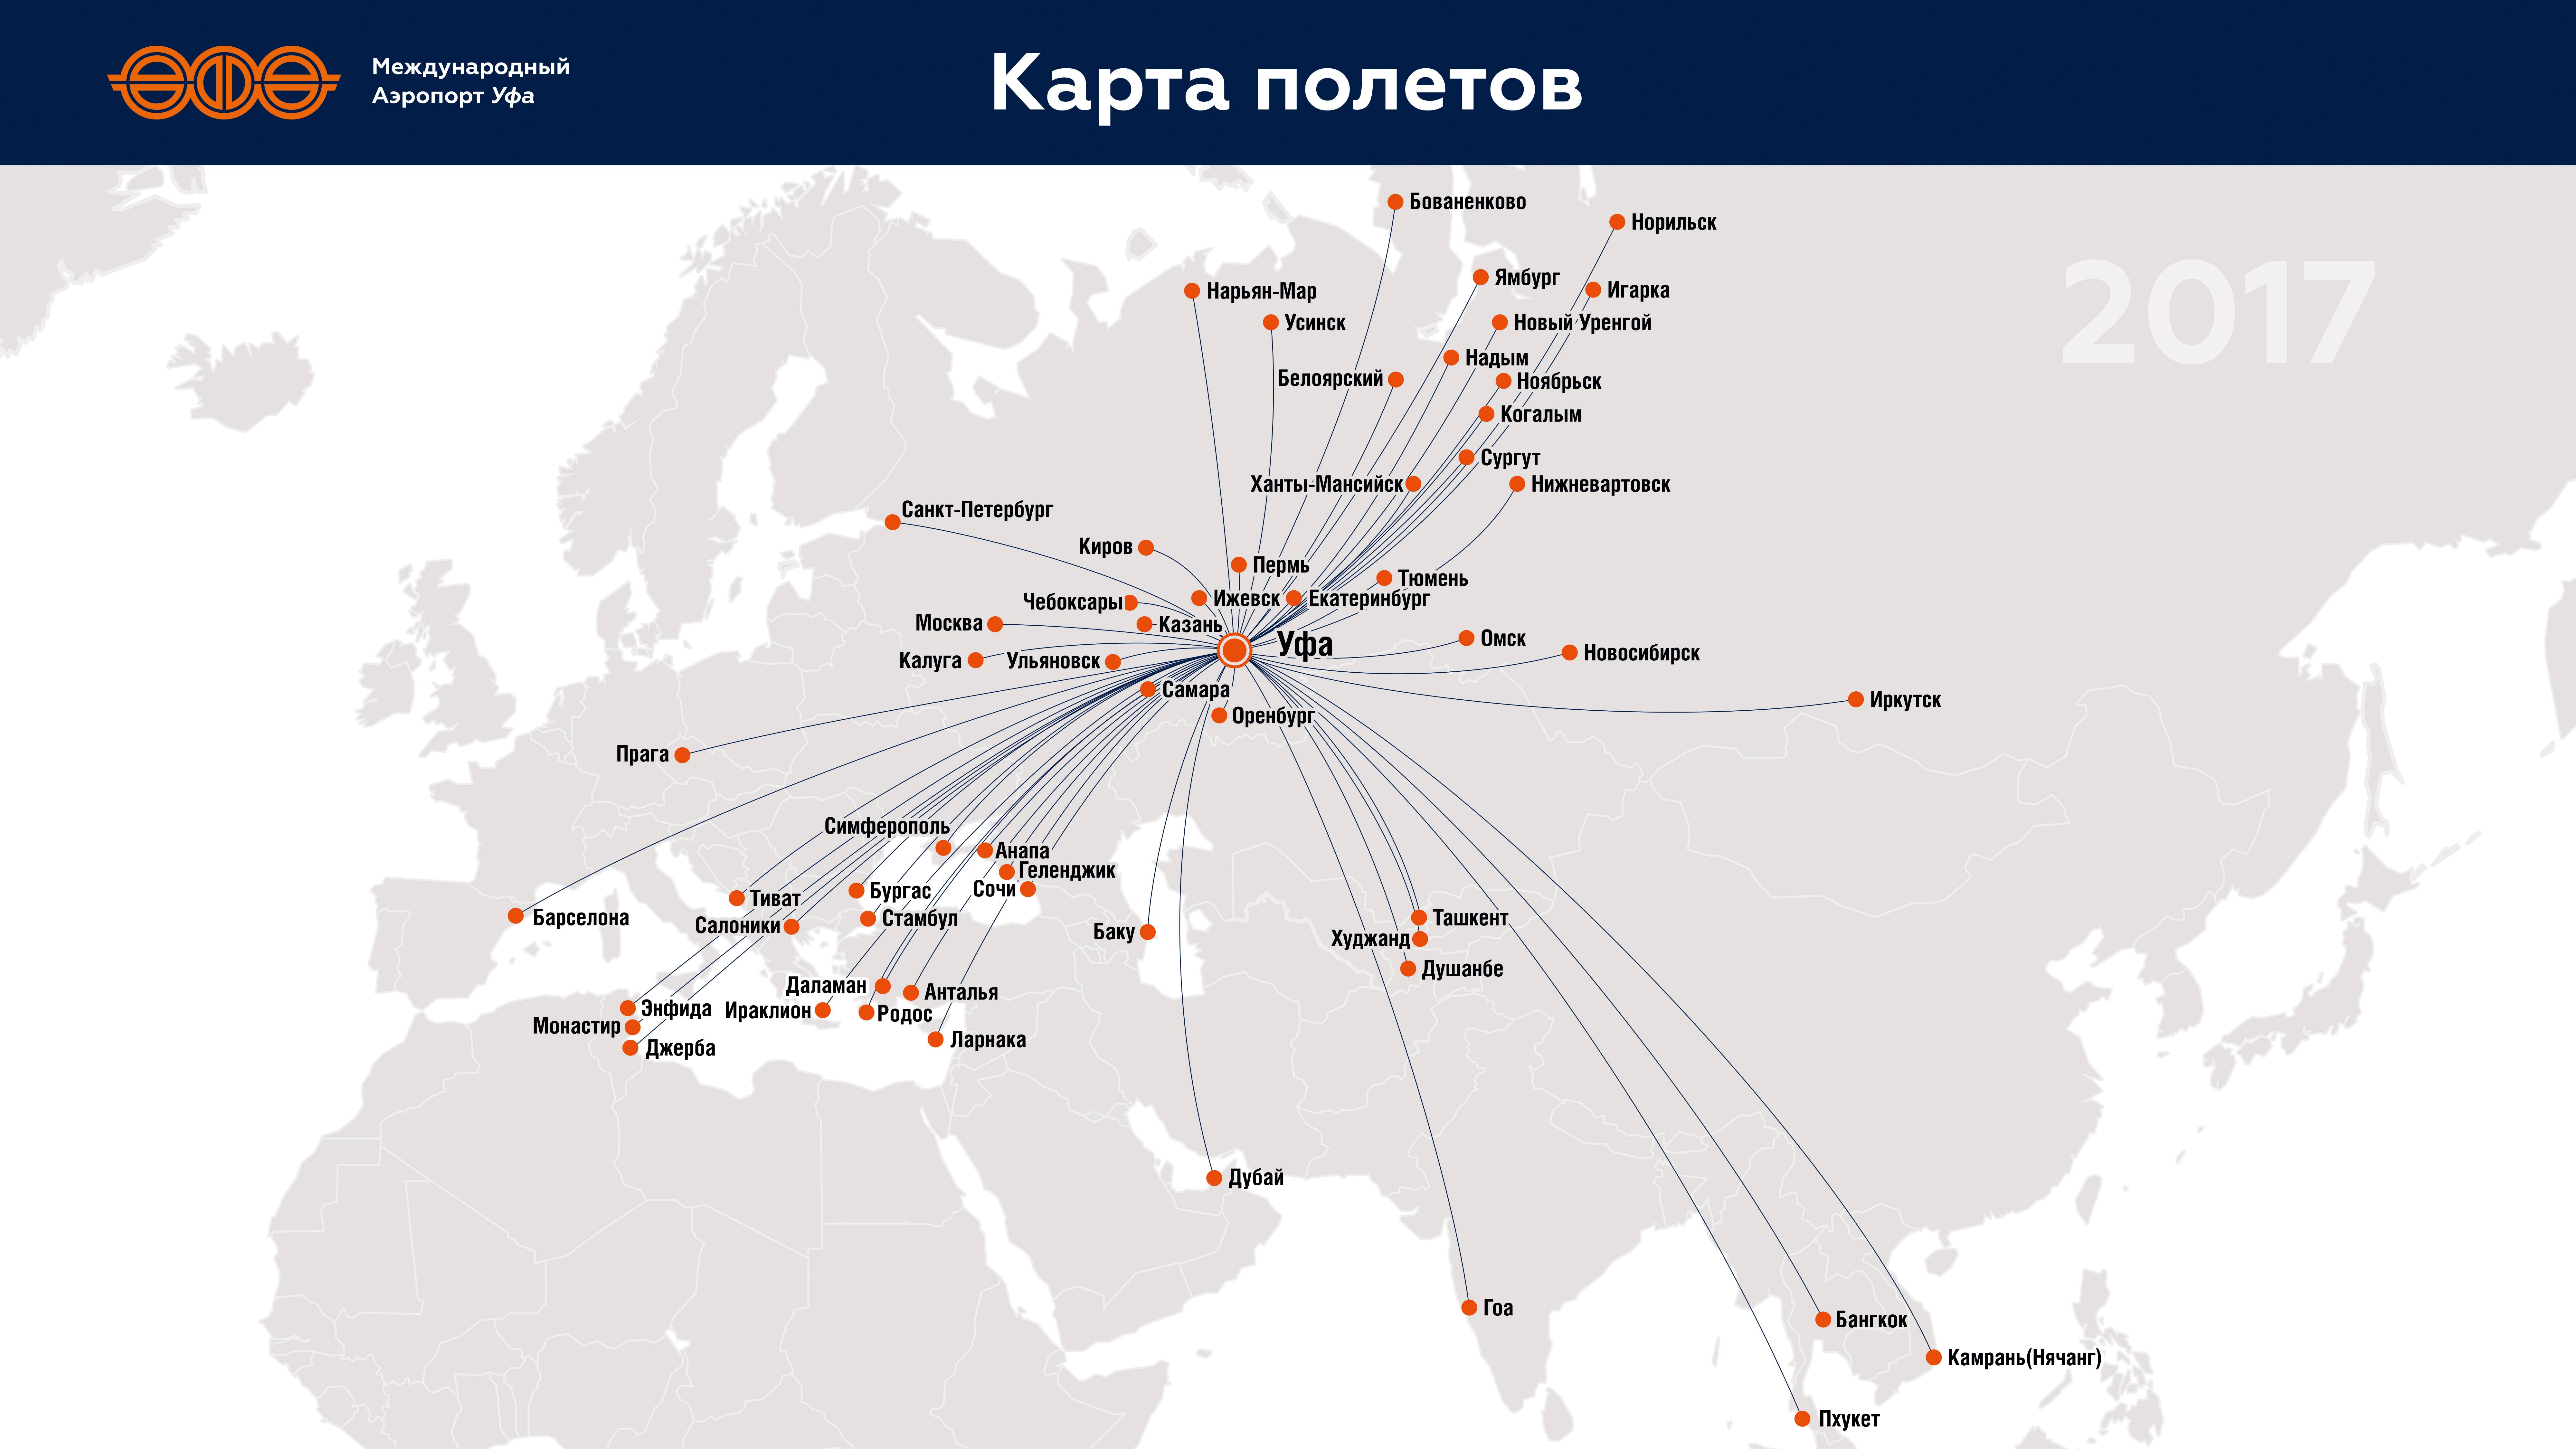 Аэропорт будапешта «ференц лист». онлайн-табло прилетов и вылетов, расписание 2022, терминалы, трансфер, гостиница, как добраться на туристер.ру